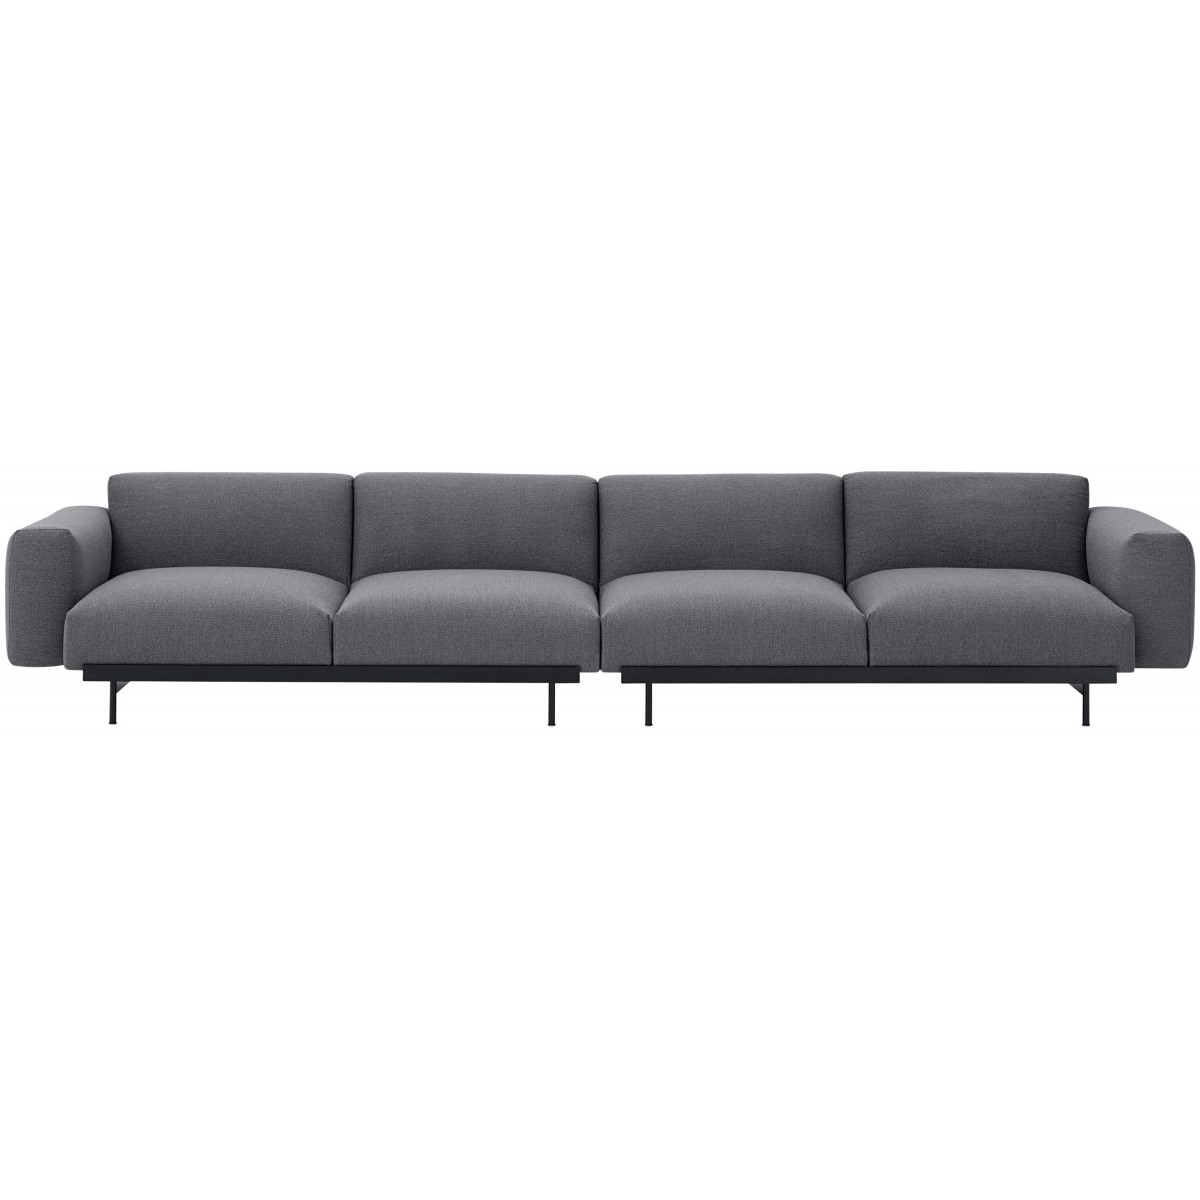 Ocean 80 / black – In Situ 4-seater sofa / configuration 1 – 360 x 107 cm